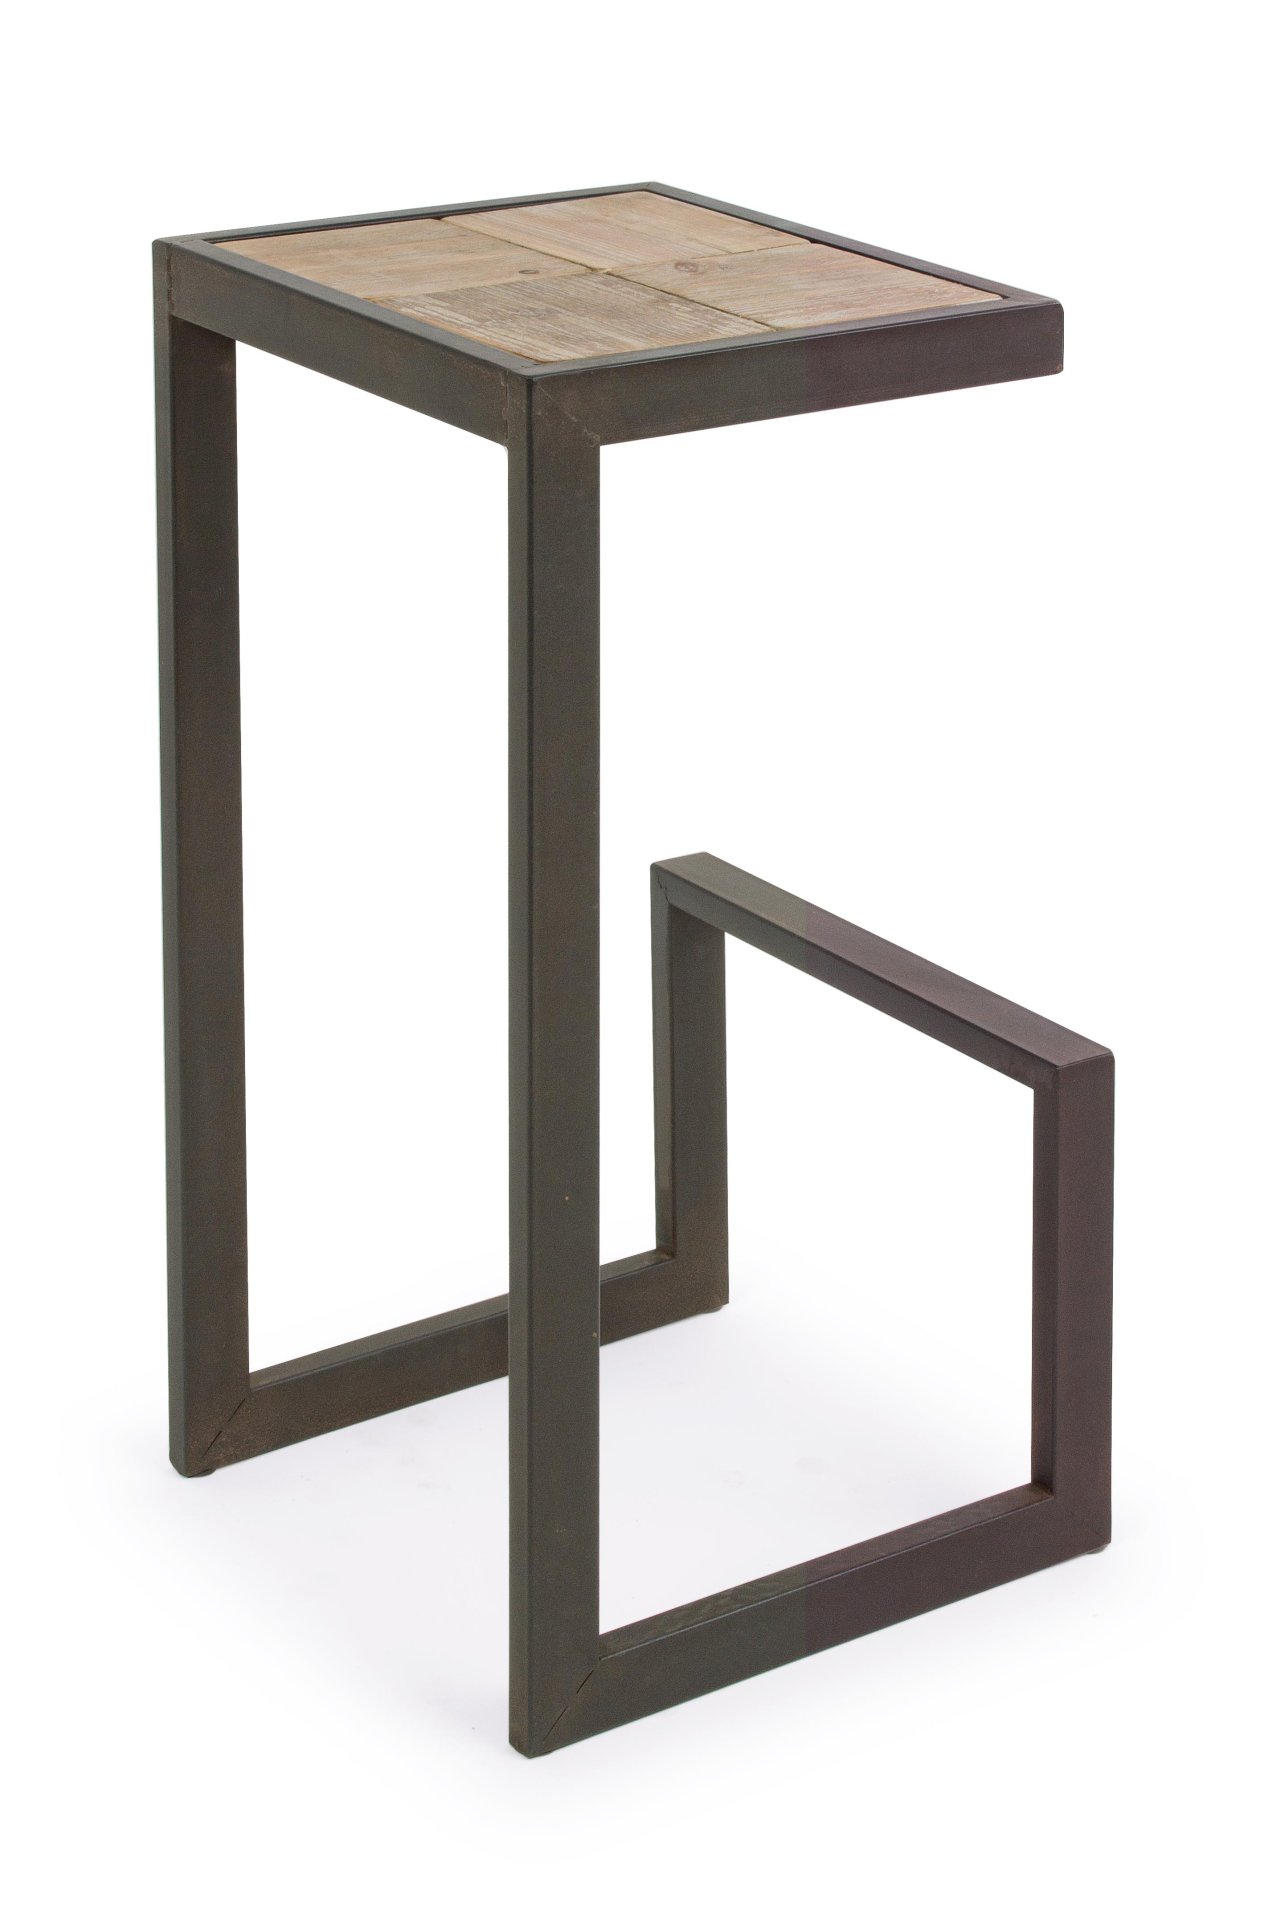 Der Barhocker Blocks überzeugt mit seinem moderndem Design. Gefertigt wurde er aus Fichtenholz, welches einen natürlichen Farbton besitzt. Das Gestell ist aus Metall und hat eine Anthrazit Farbe. Die Sitzhöhe beträgt 70 cm.